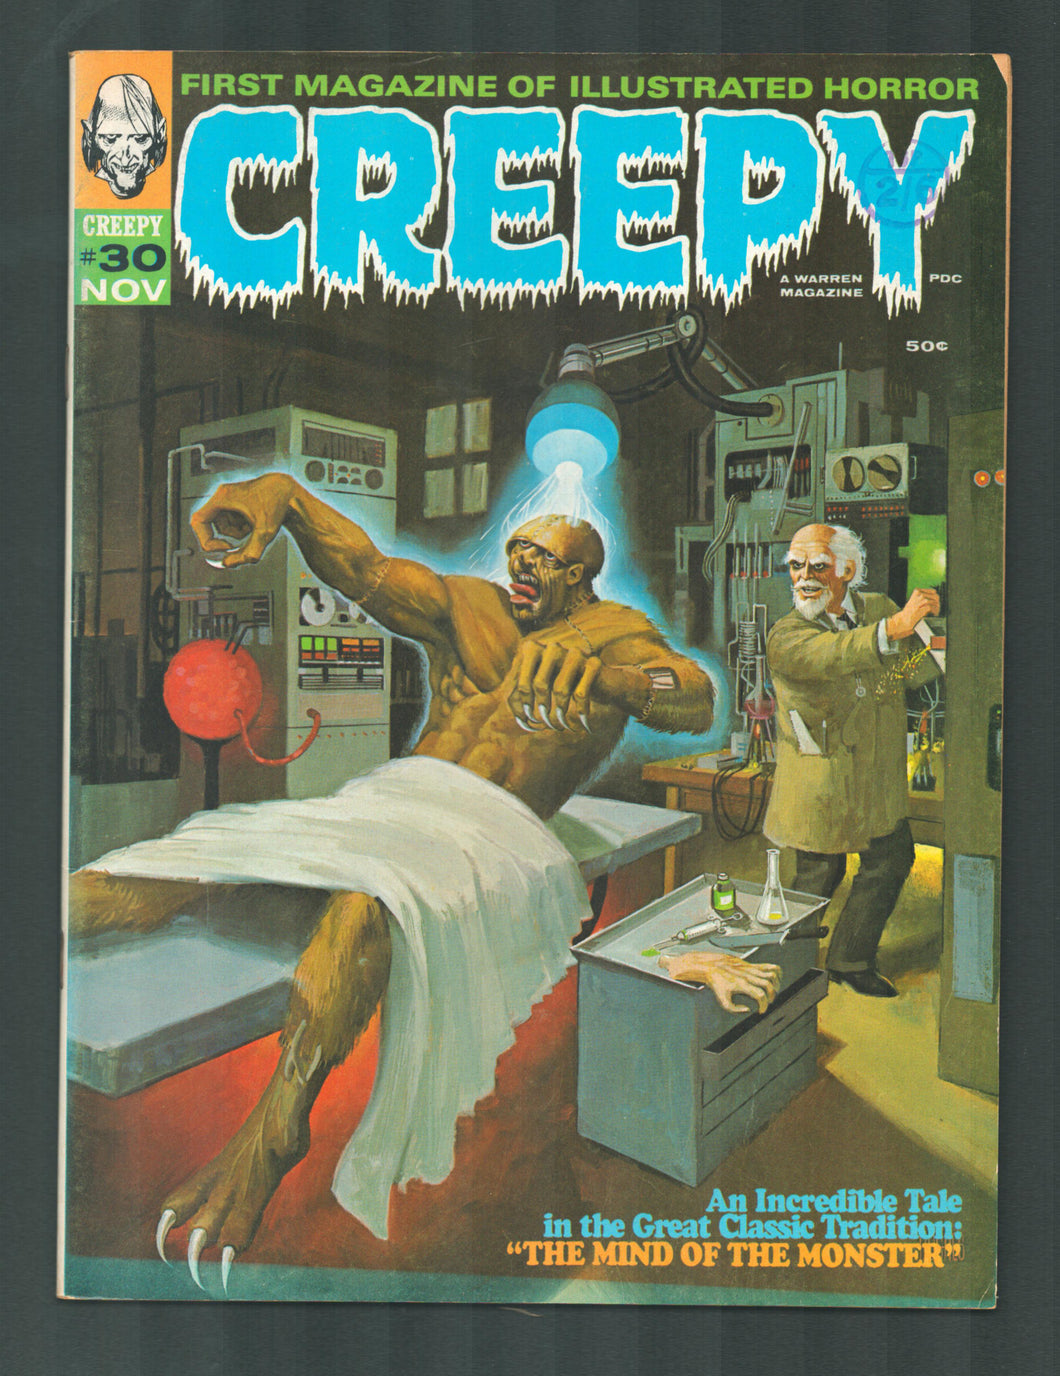 Creepy No 30 Nov 1969